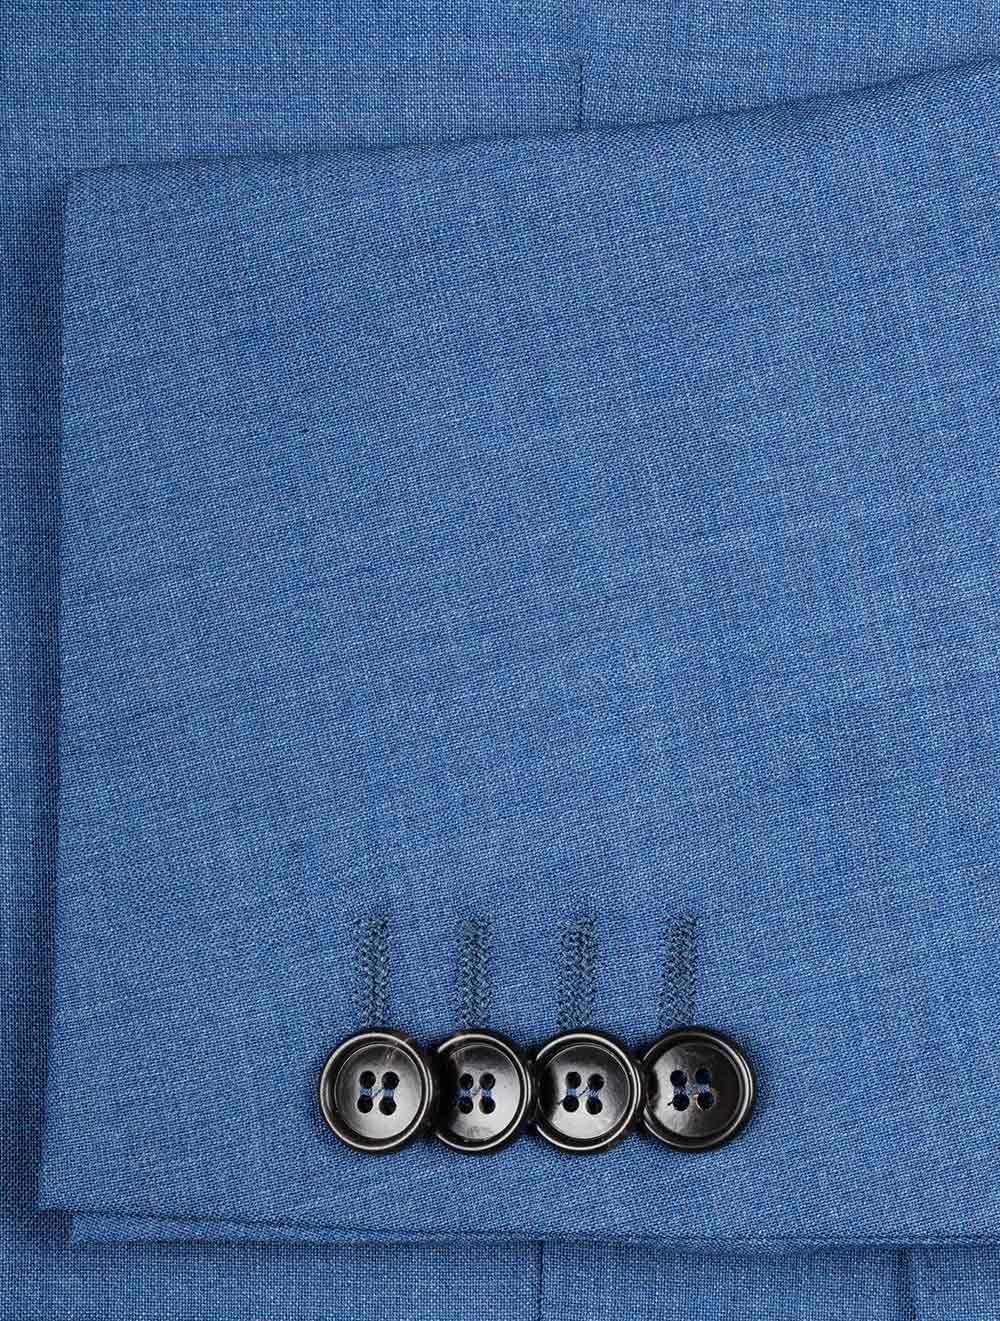 Plain 3 Piece Suit Blue